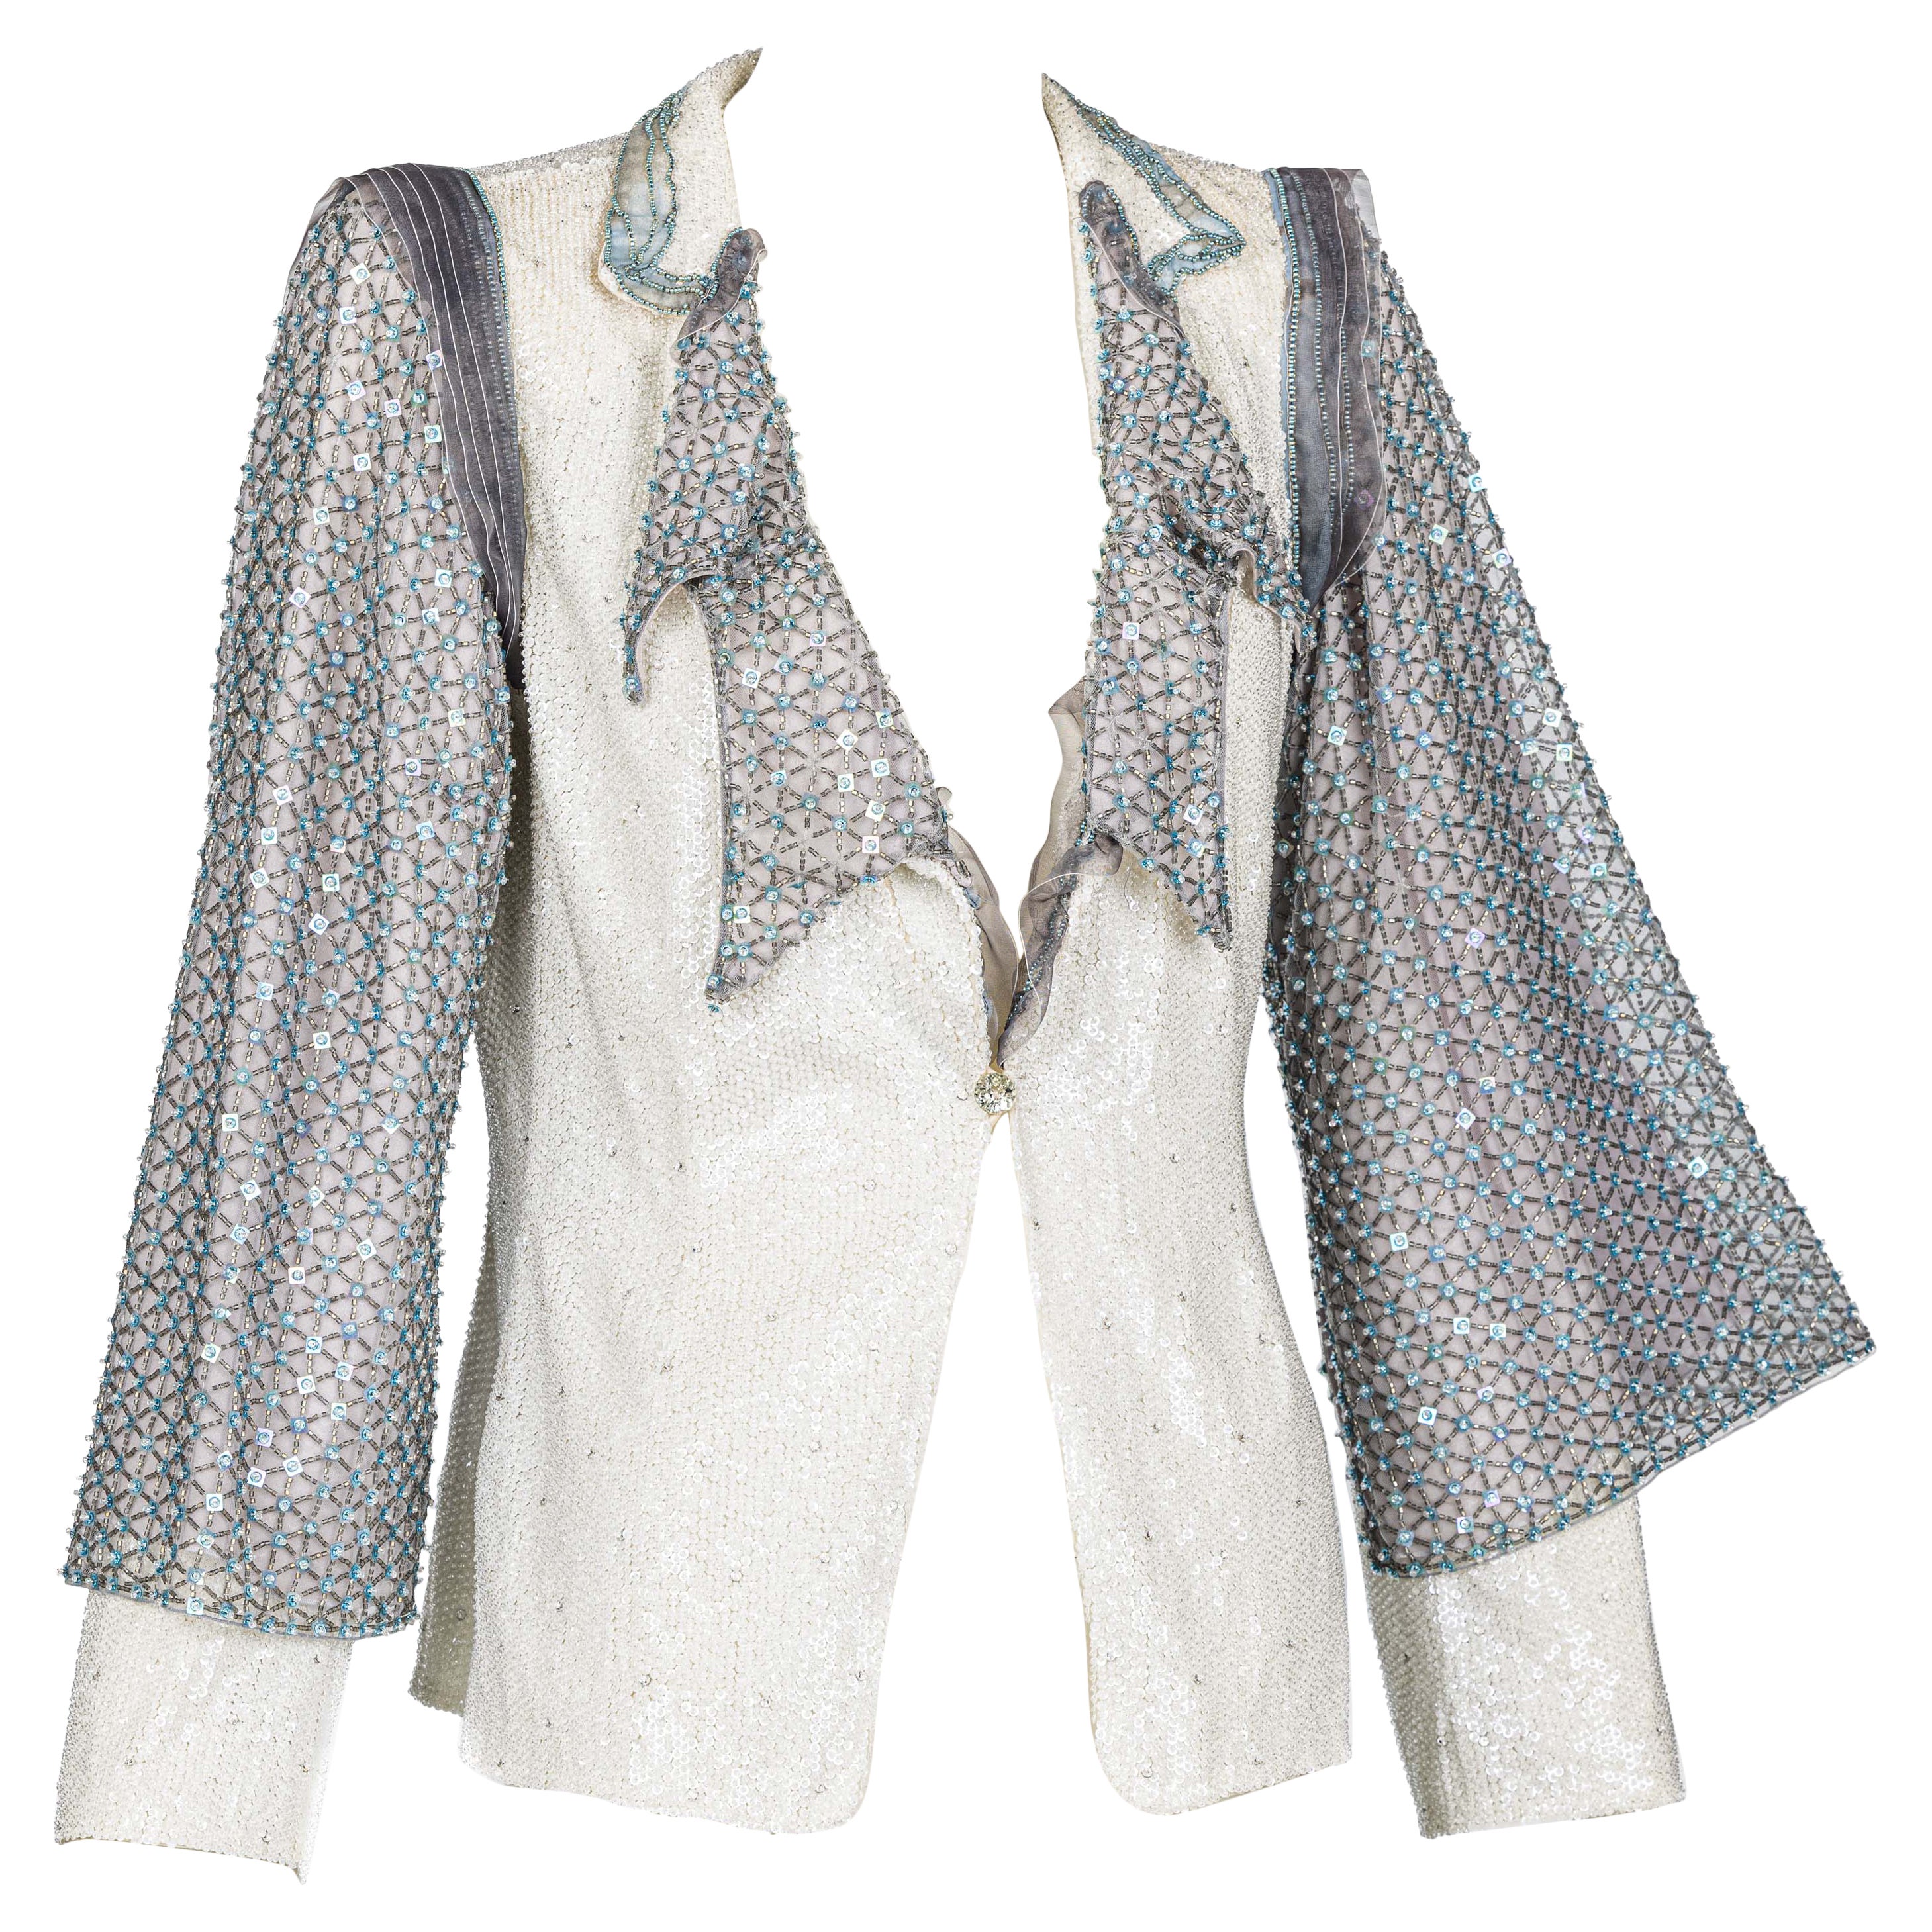 Une veste exceptionnelle de Giorgio Armani achetée pour plus de 12 000 dollars.
Entièrement rehaussée de paillettes et de cristaux, elle présente des détails complexes avec des couches d'organza et des manches perlées superposées. Un véritable coup